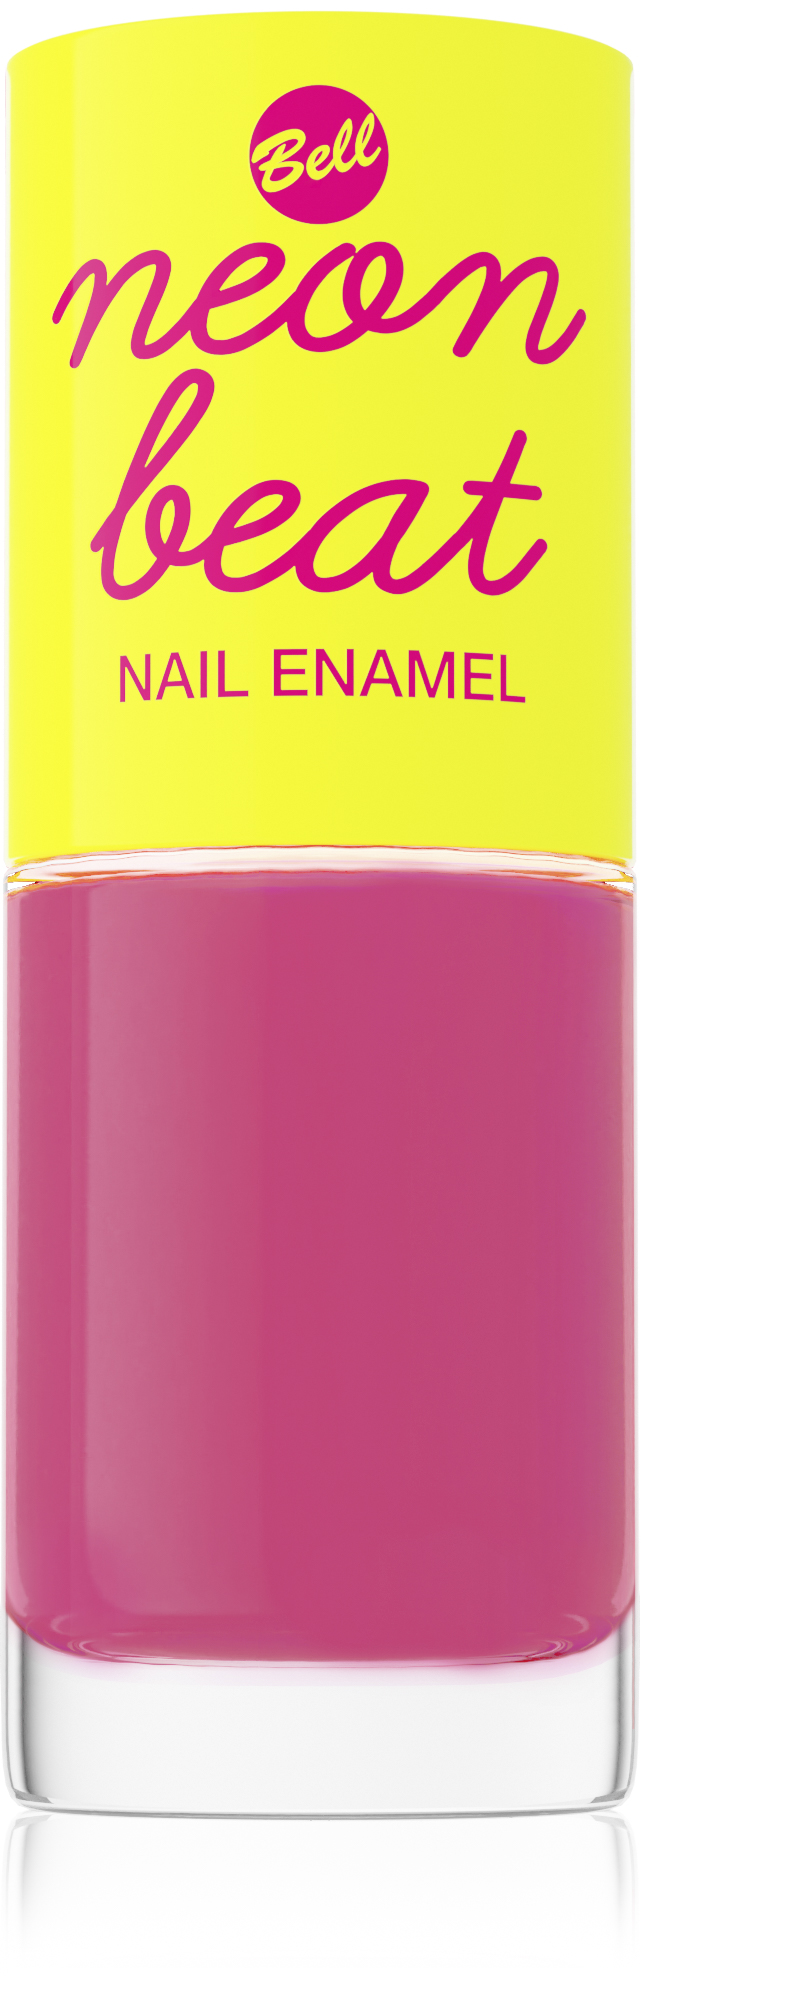 Neon Beat Nail Enamel